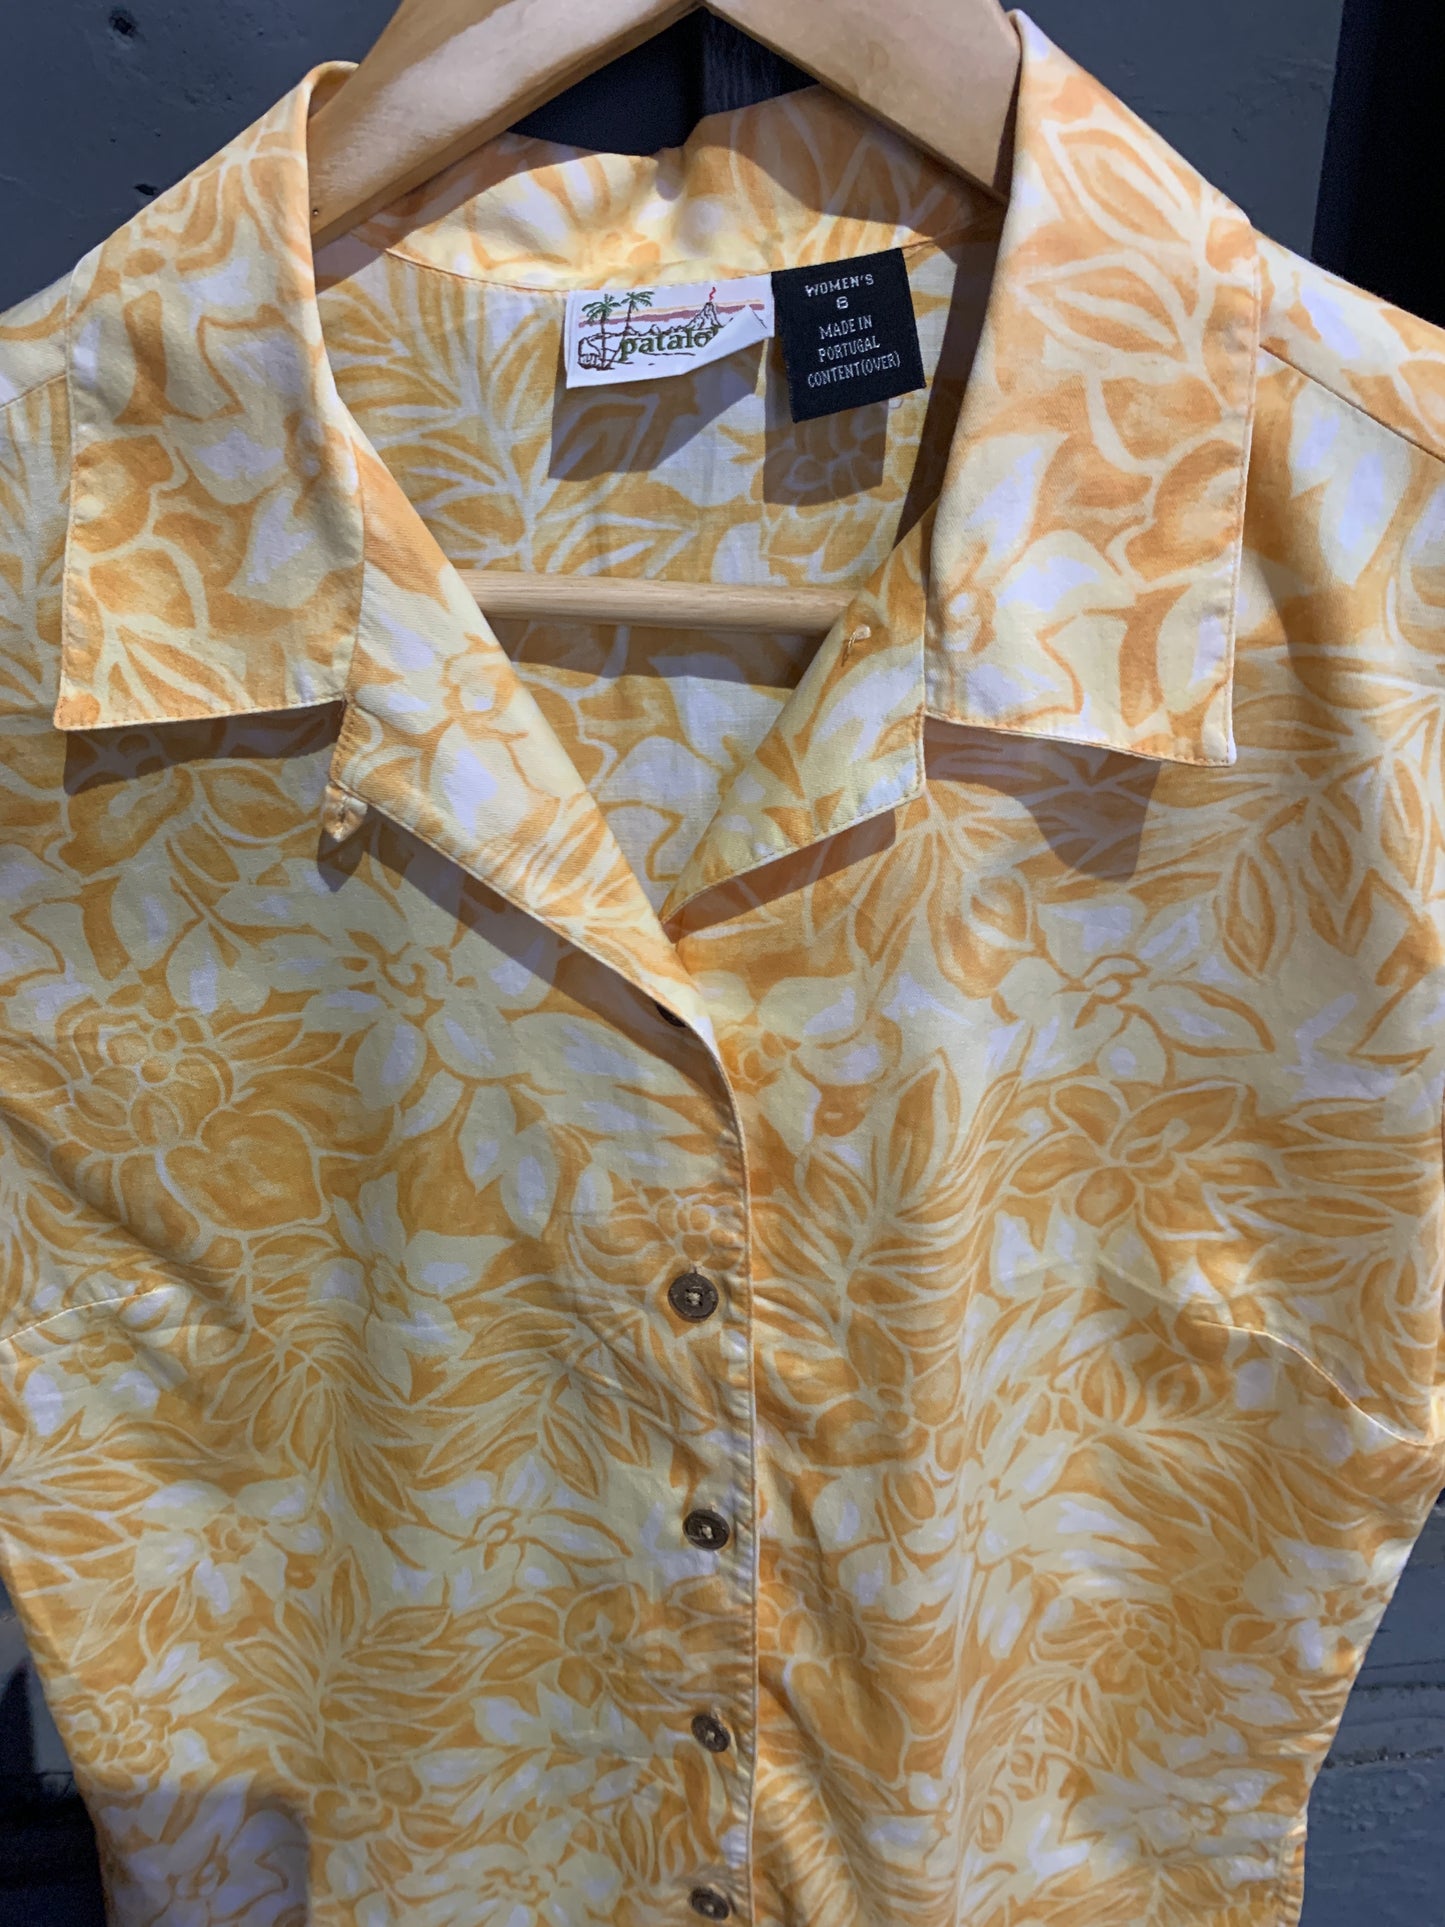 Pataloha Hawaiian Style Shirt